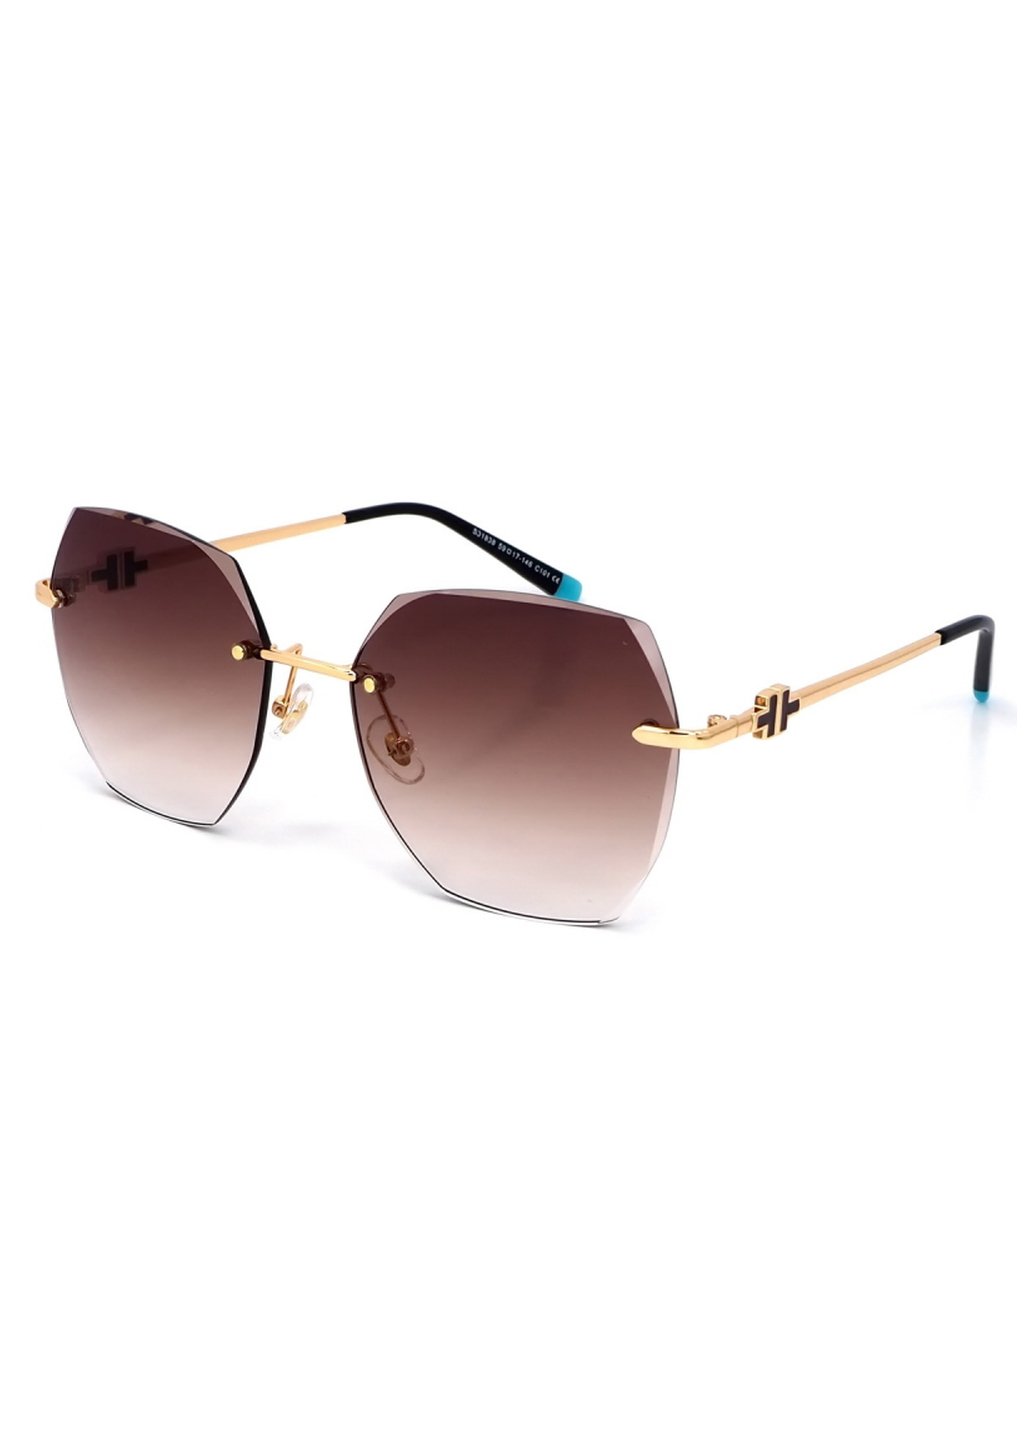 Купить Женские солнцезащитные очки Merlini с поляризацией S31838 117106 - Золотистый в интернет-магазине